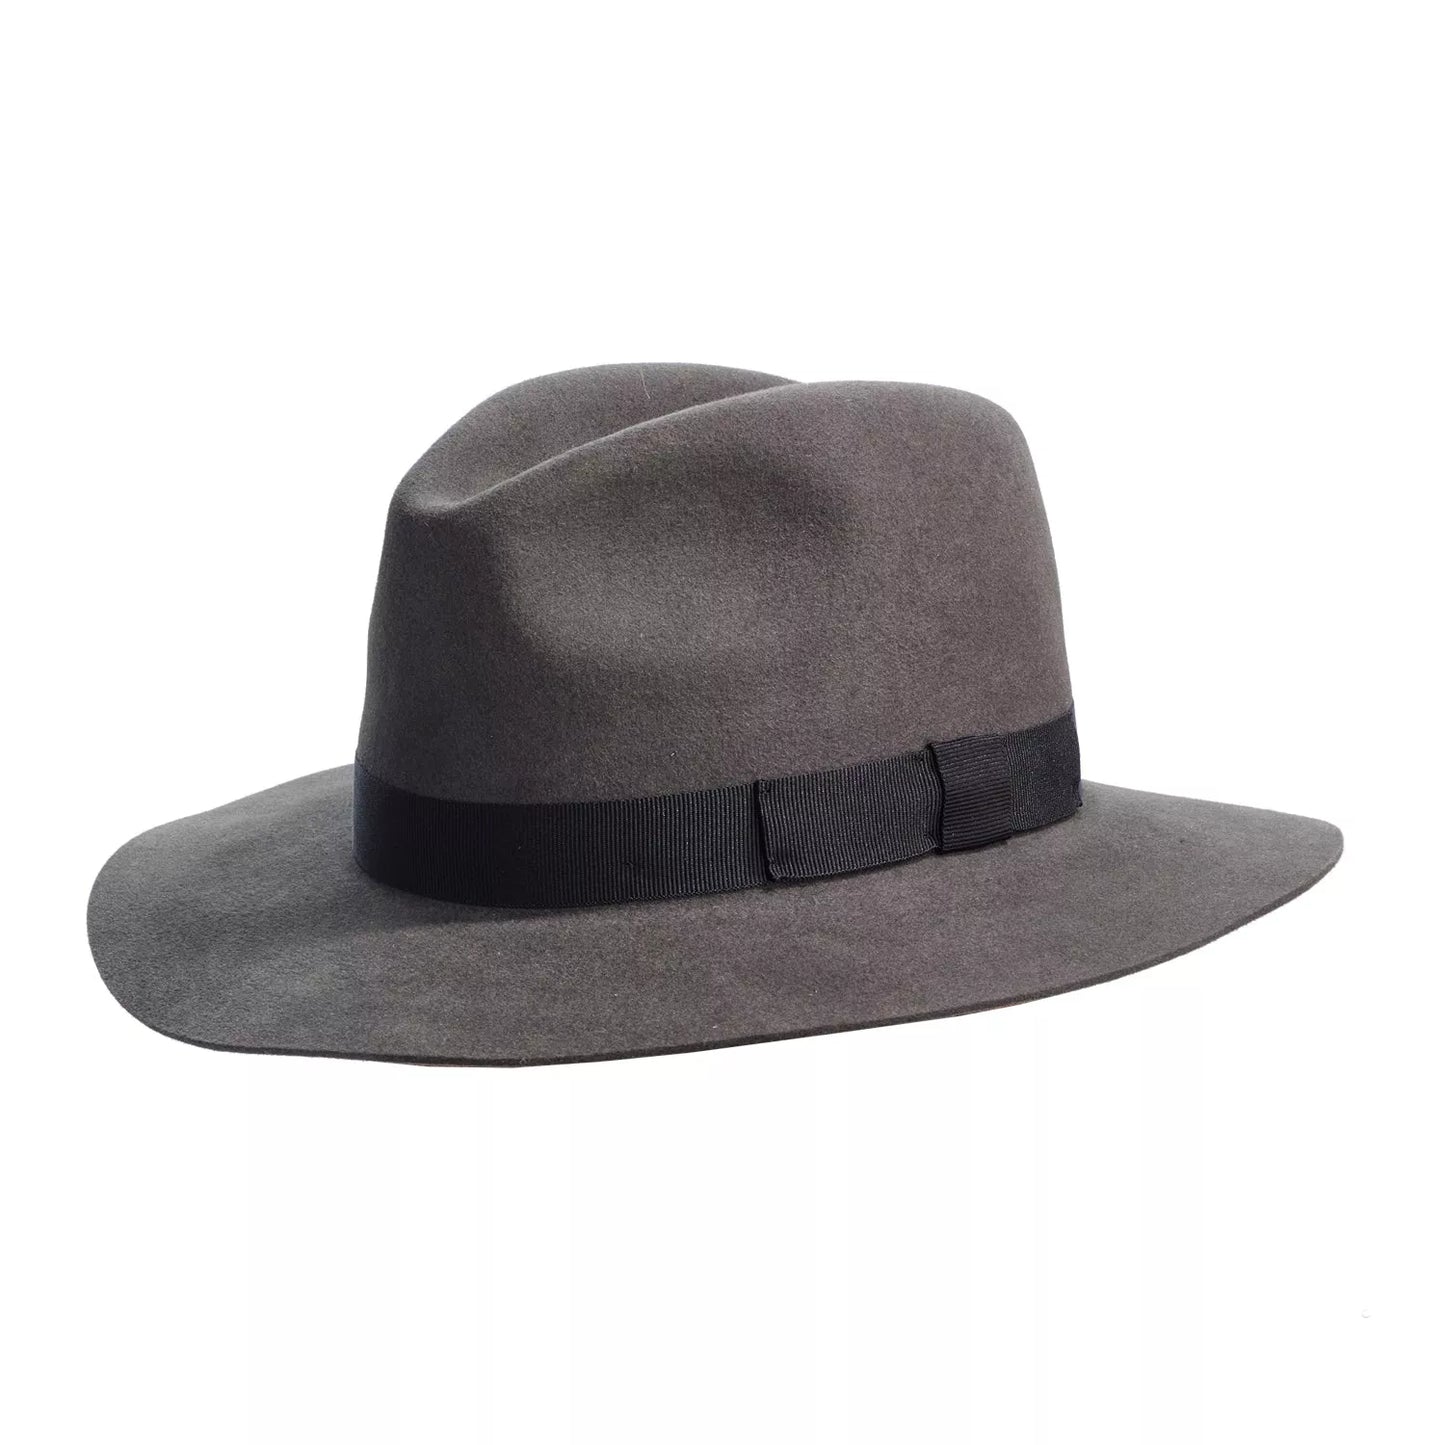 crushable fedora hat grey